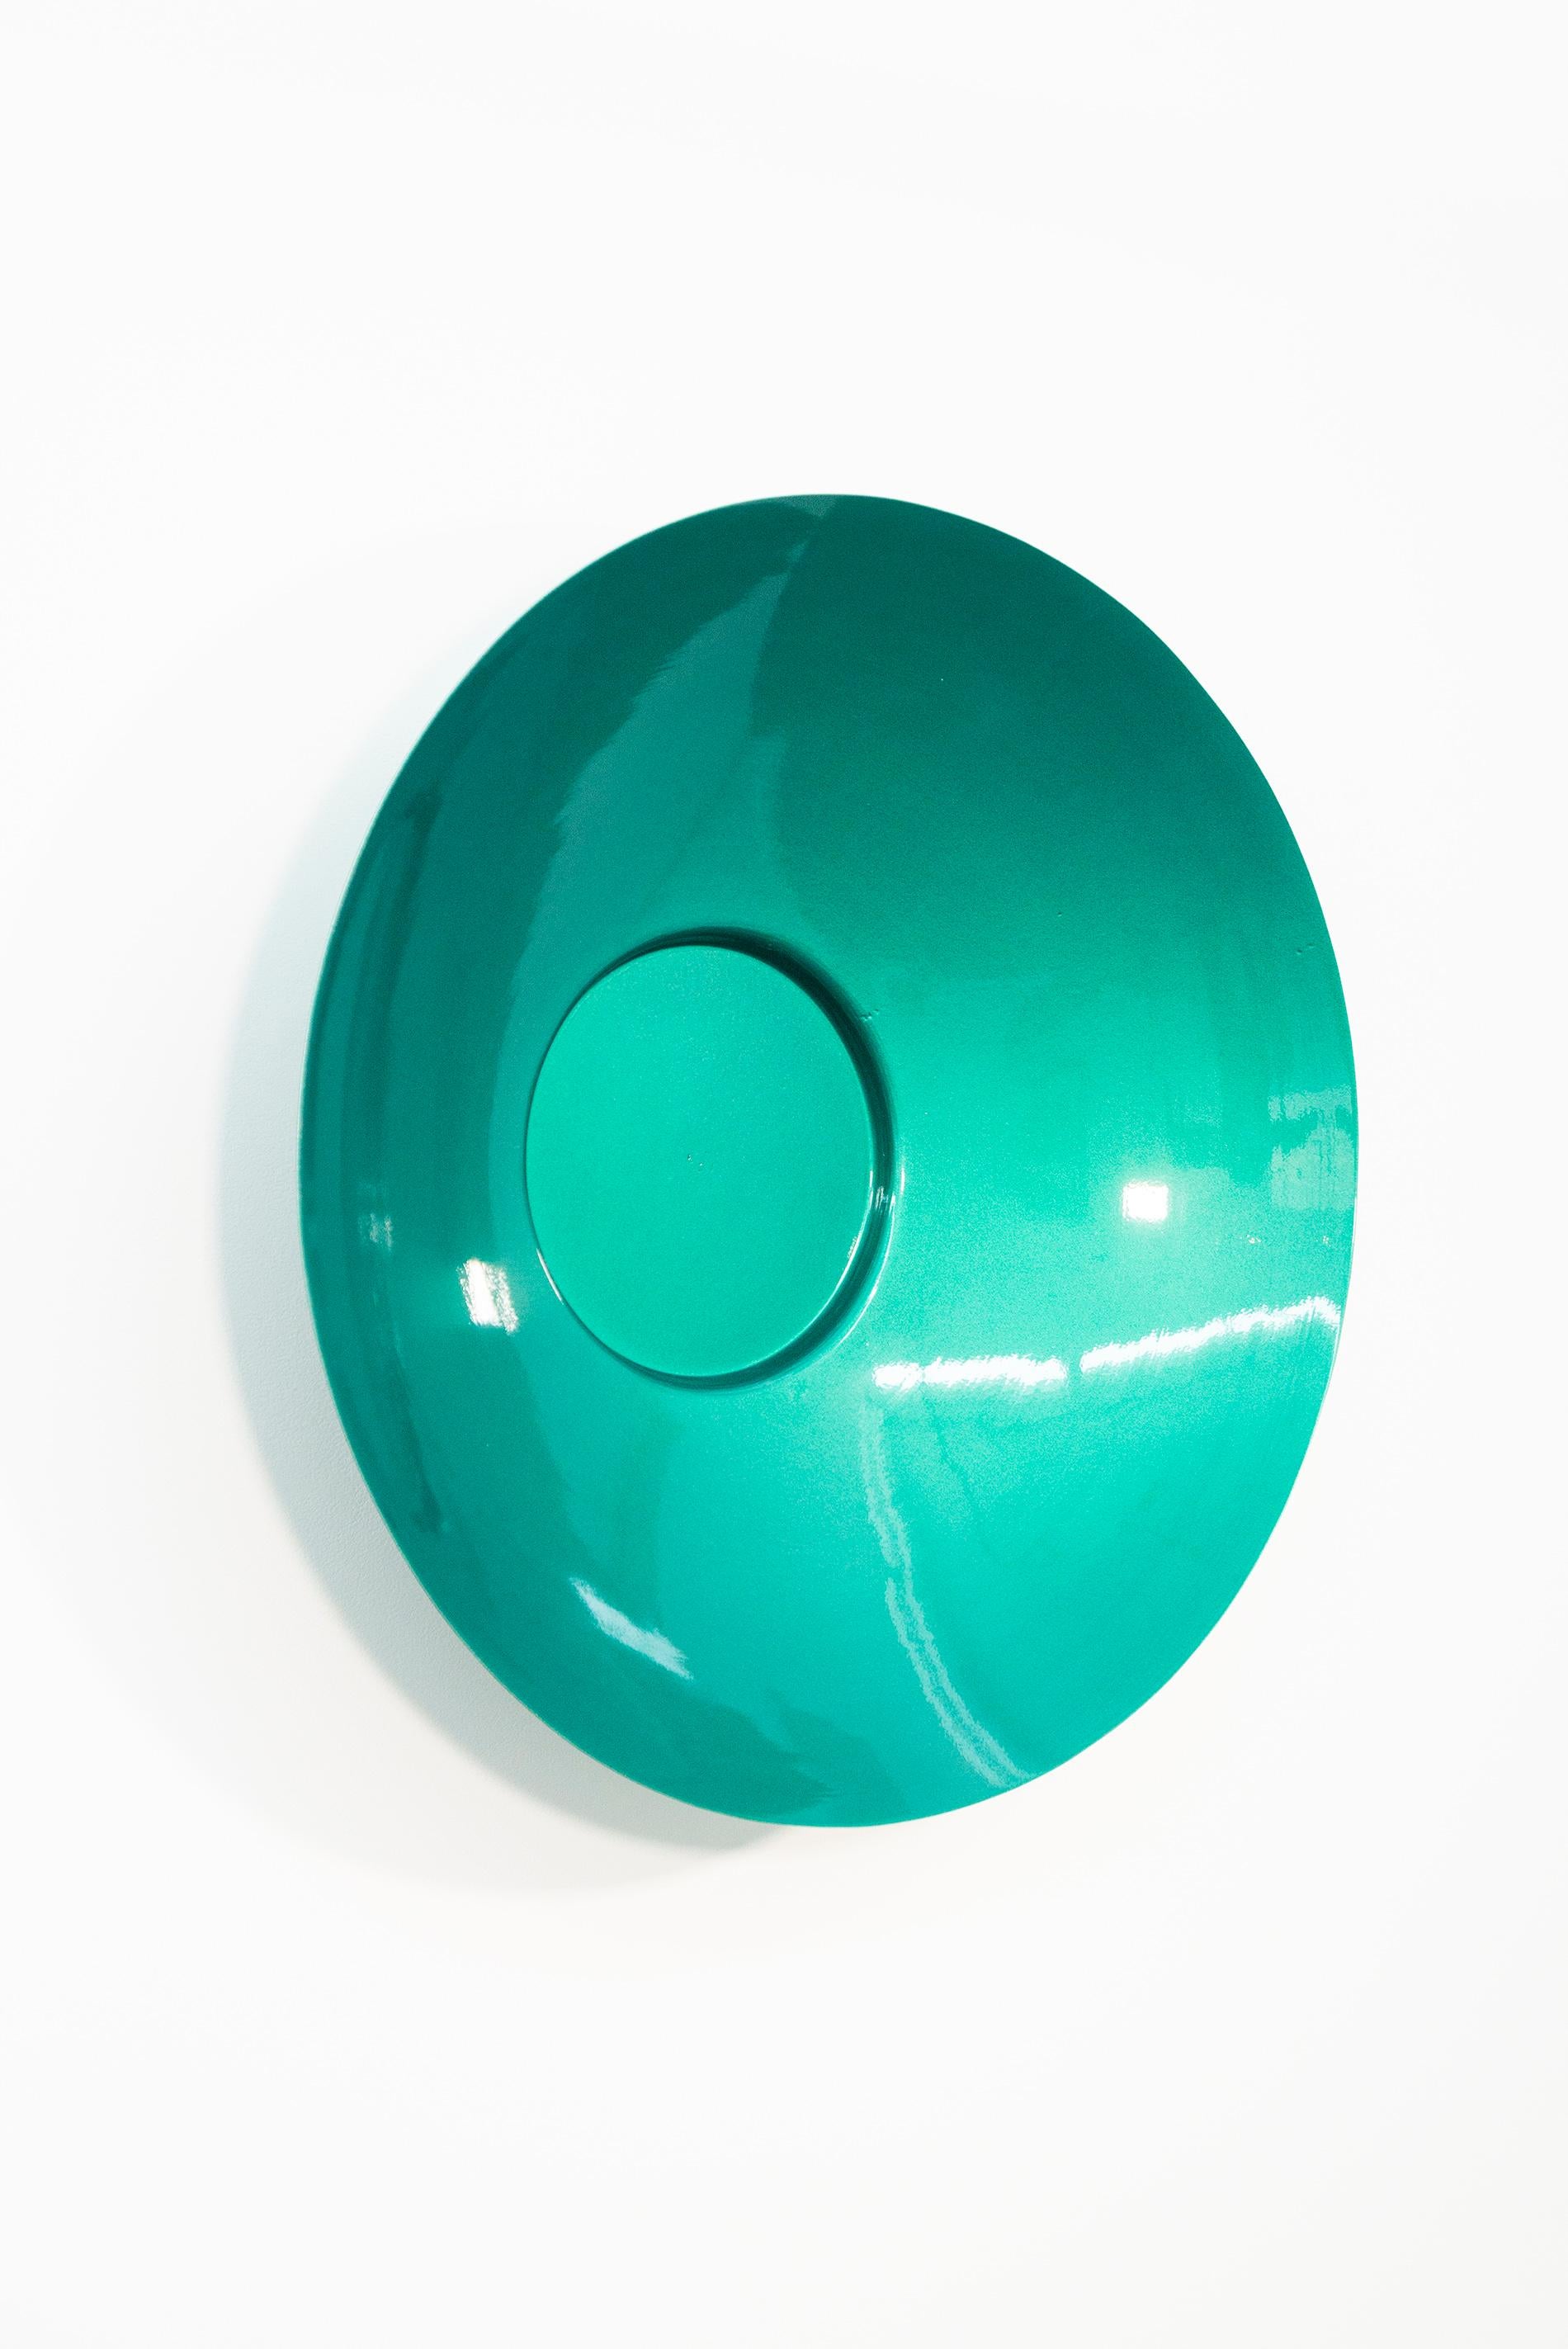 Quetzal Green 32- runde, zeitgenössische Stahlwandskulptur, singendes Gefäß (Geometrische Abstraktion), Sculpture, von Marlene Hilton Moore